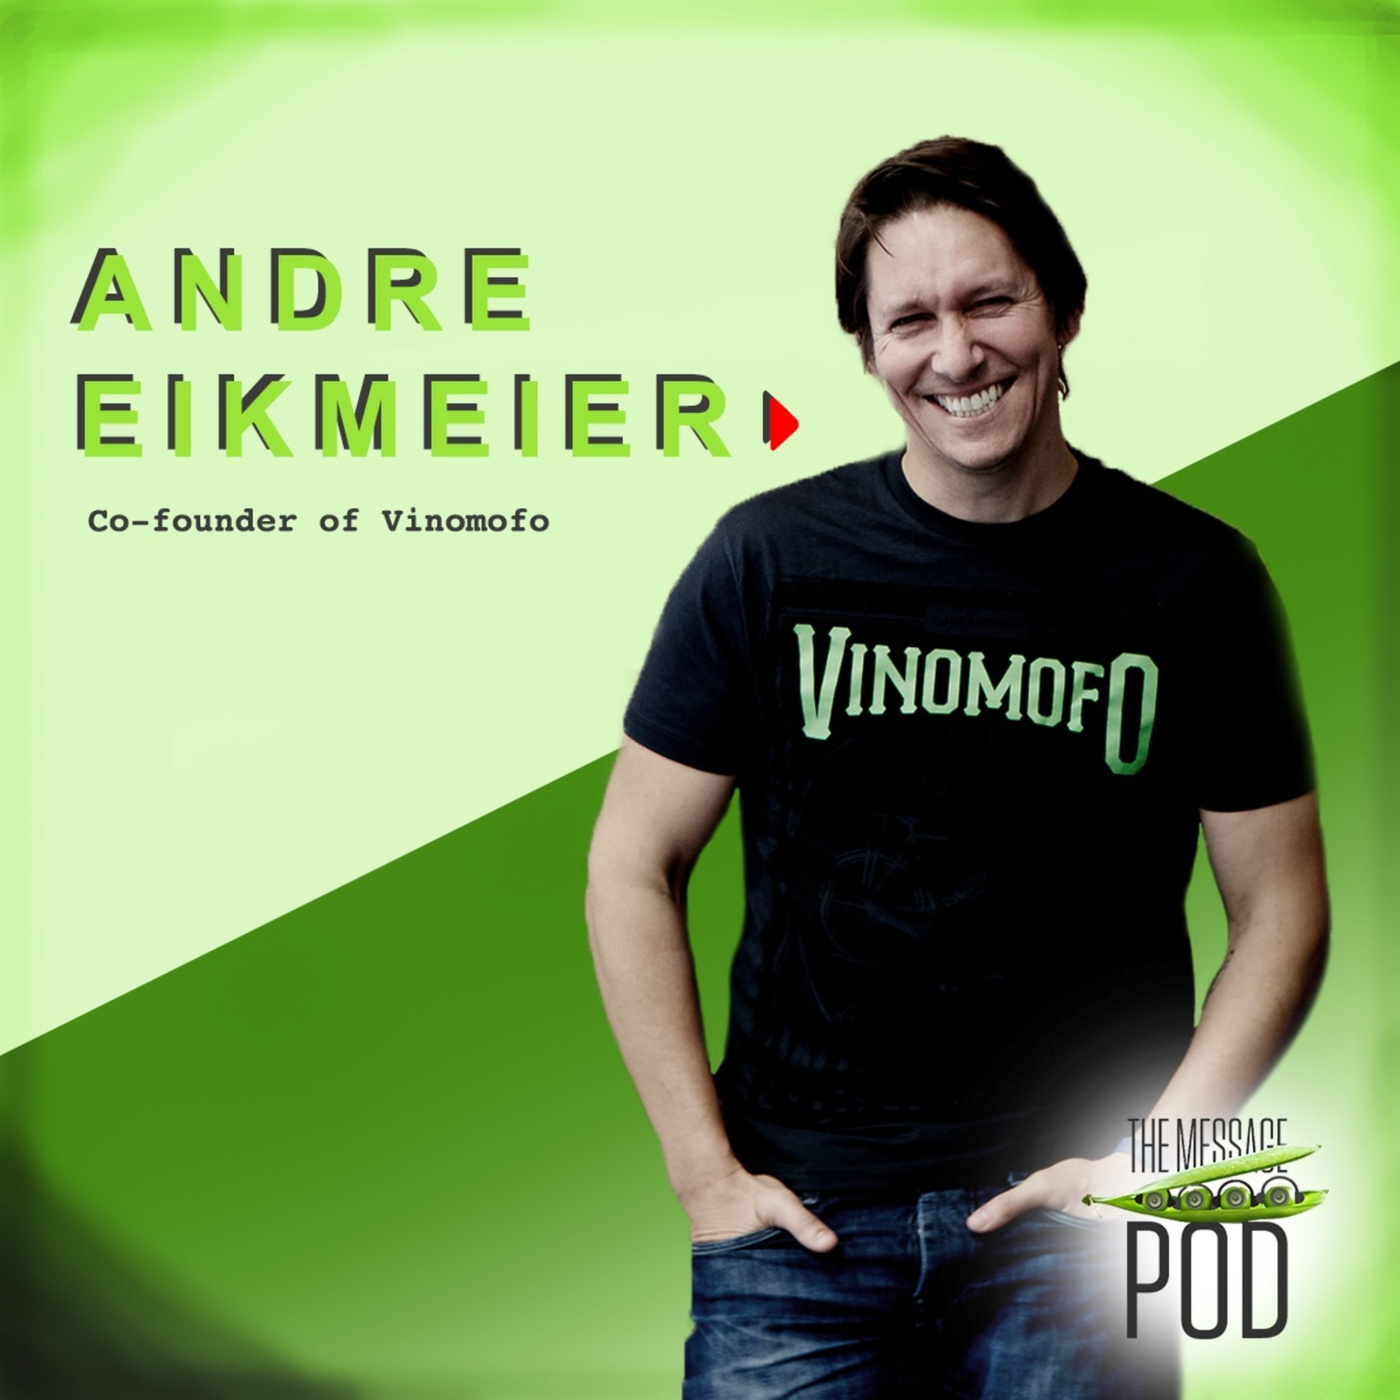 #55 Andre Eikmeier - co-founder of Vinomofo on success, entrepreneurship and enlightenment